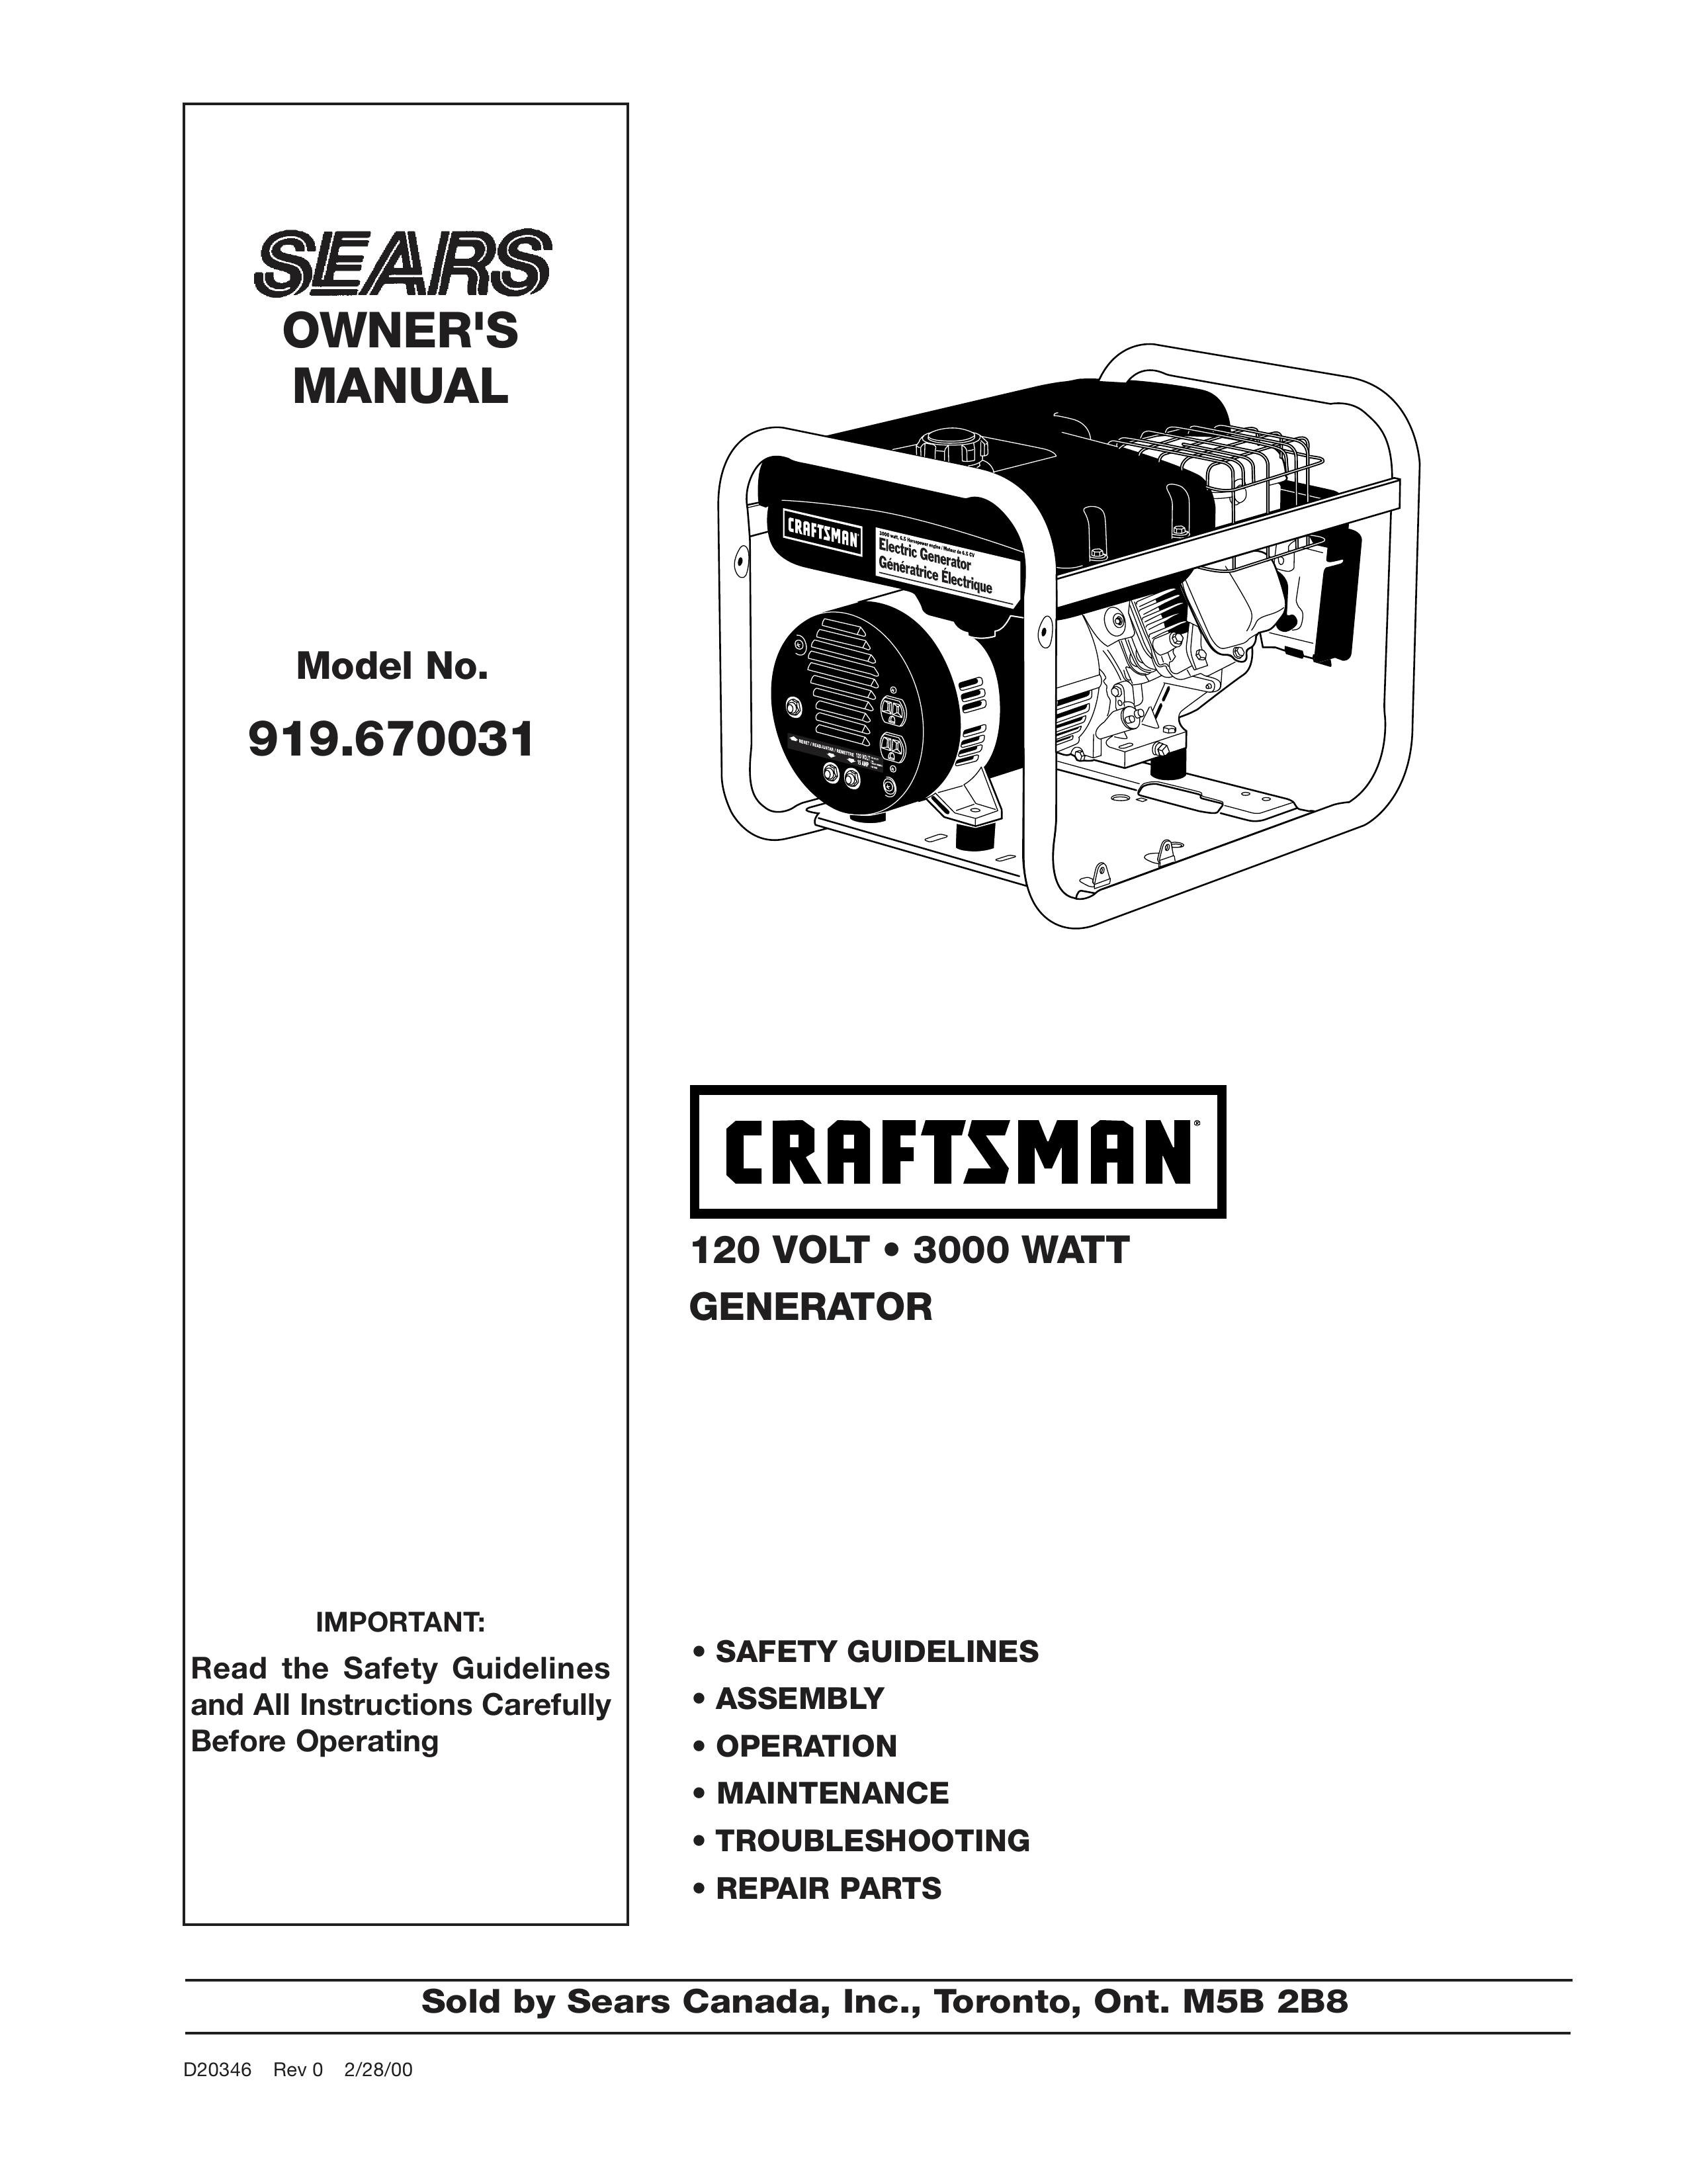 Craftsman D20346 Portable Generator User Manual